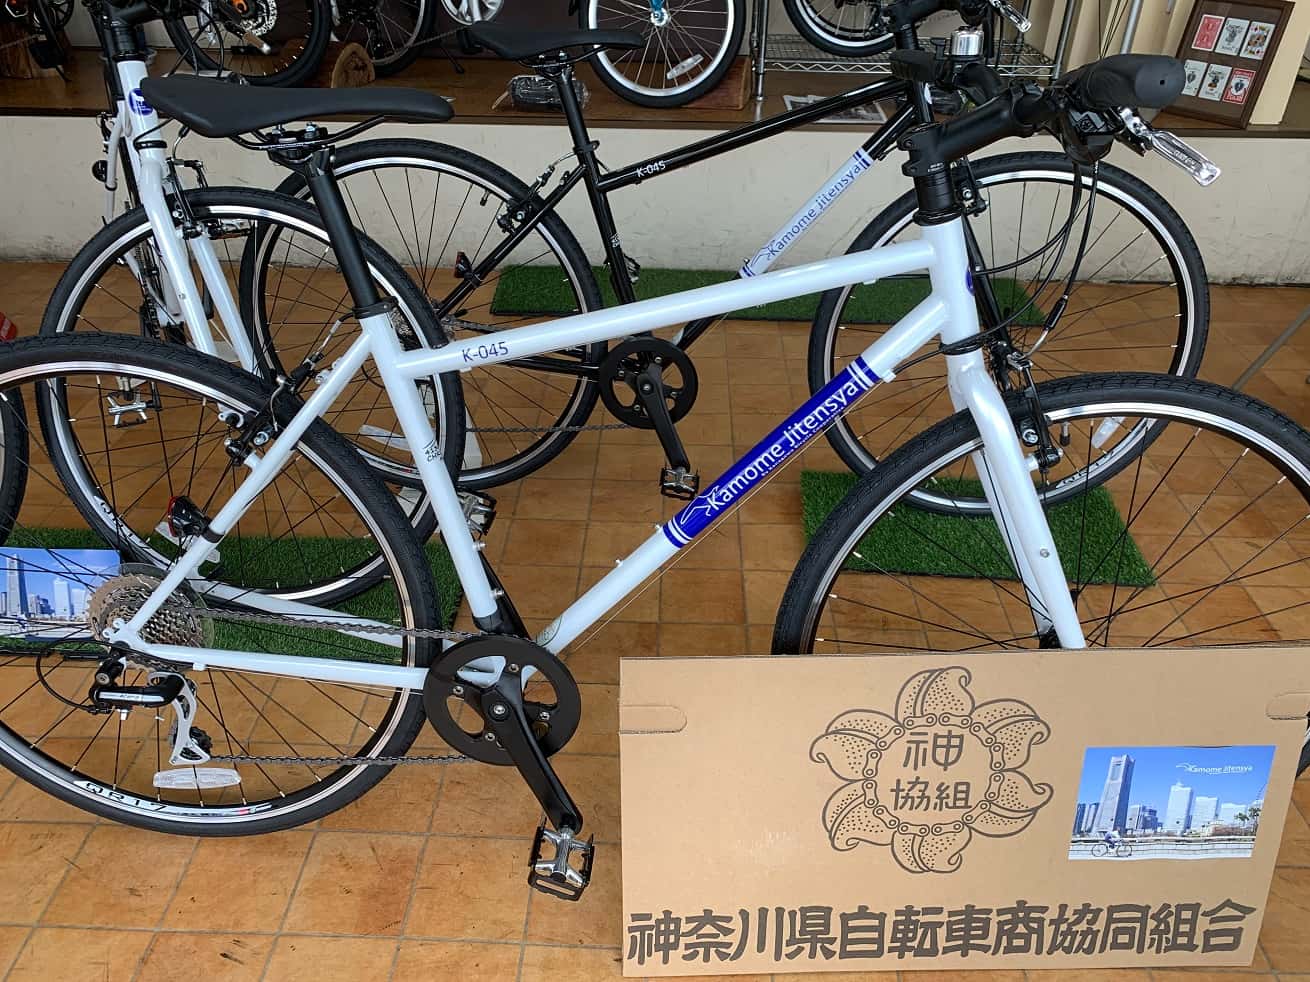 神奈川県自転車組合オリジナル自転車「かもめ自転車」クロスバイクK-045展示中